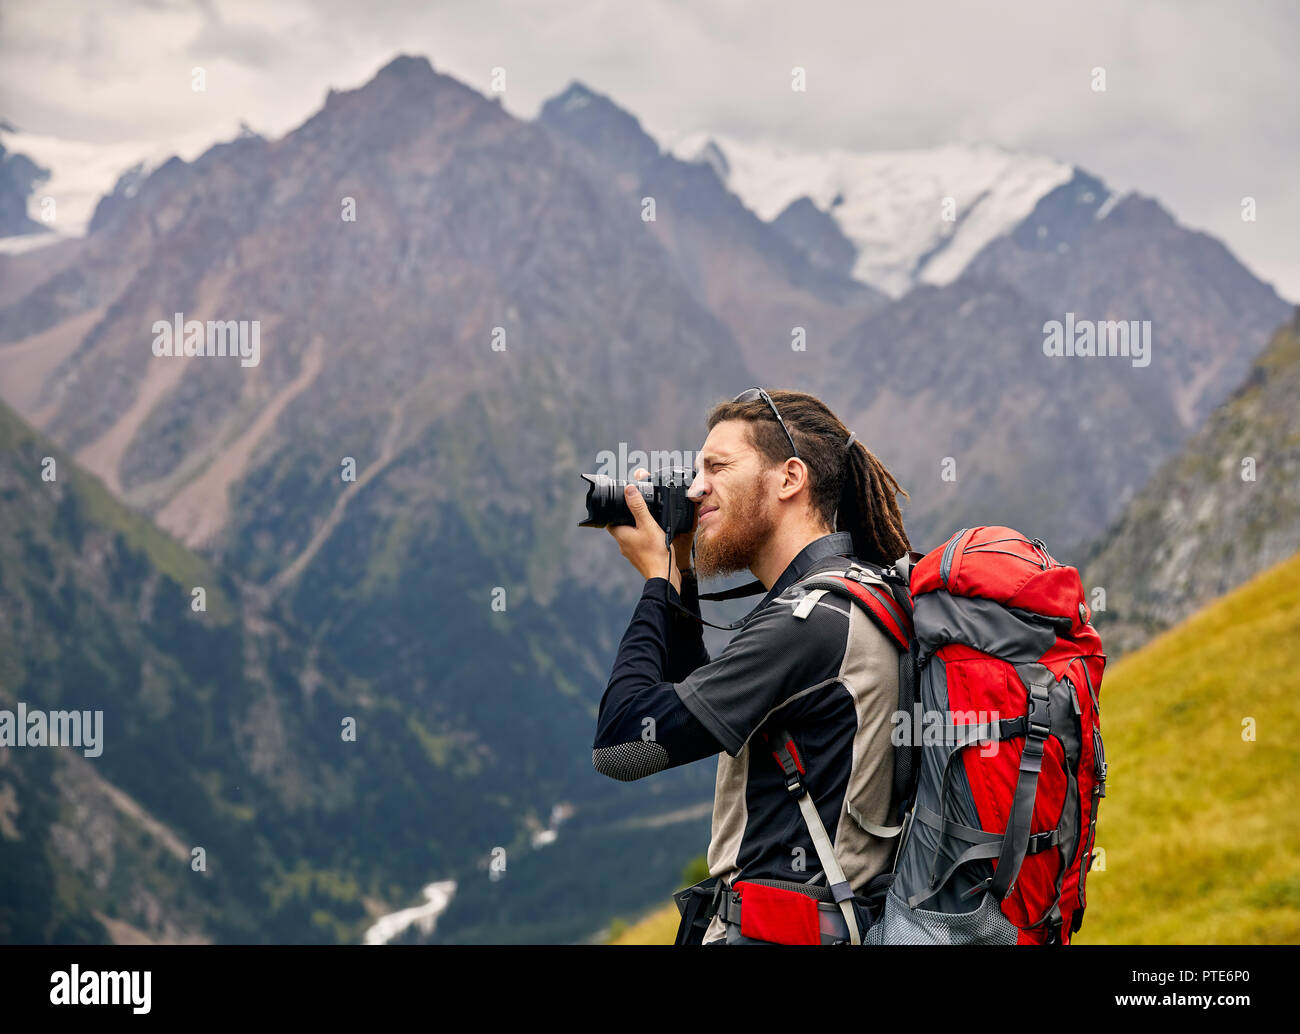 Hombre fotógrafo con gran mochila y cámara tomando fotos de las montañas. Concepto de estilo de vida de viajes de aventura al aire libre vacaciones activas Foto de stock